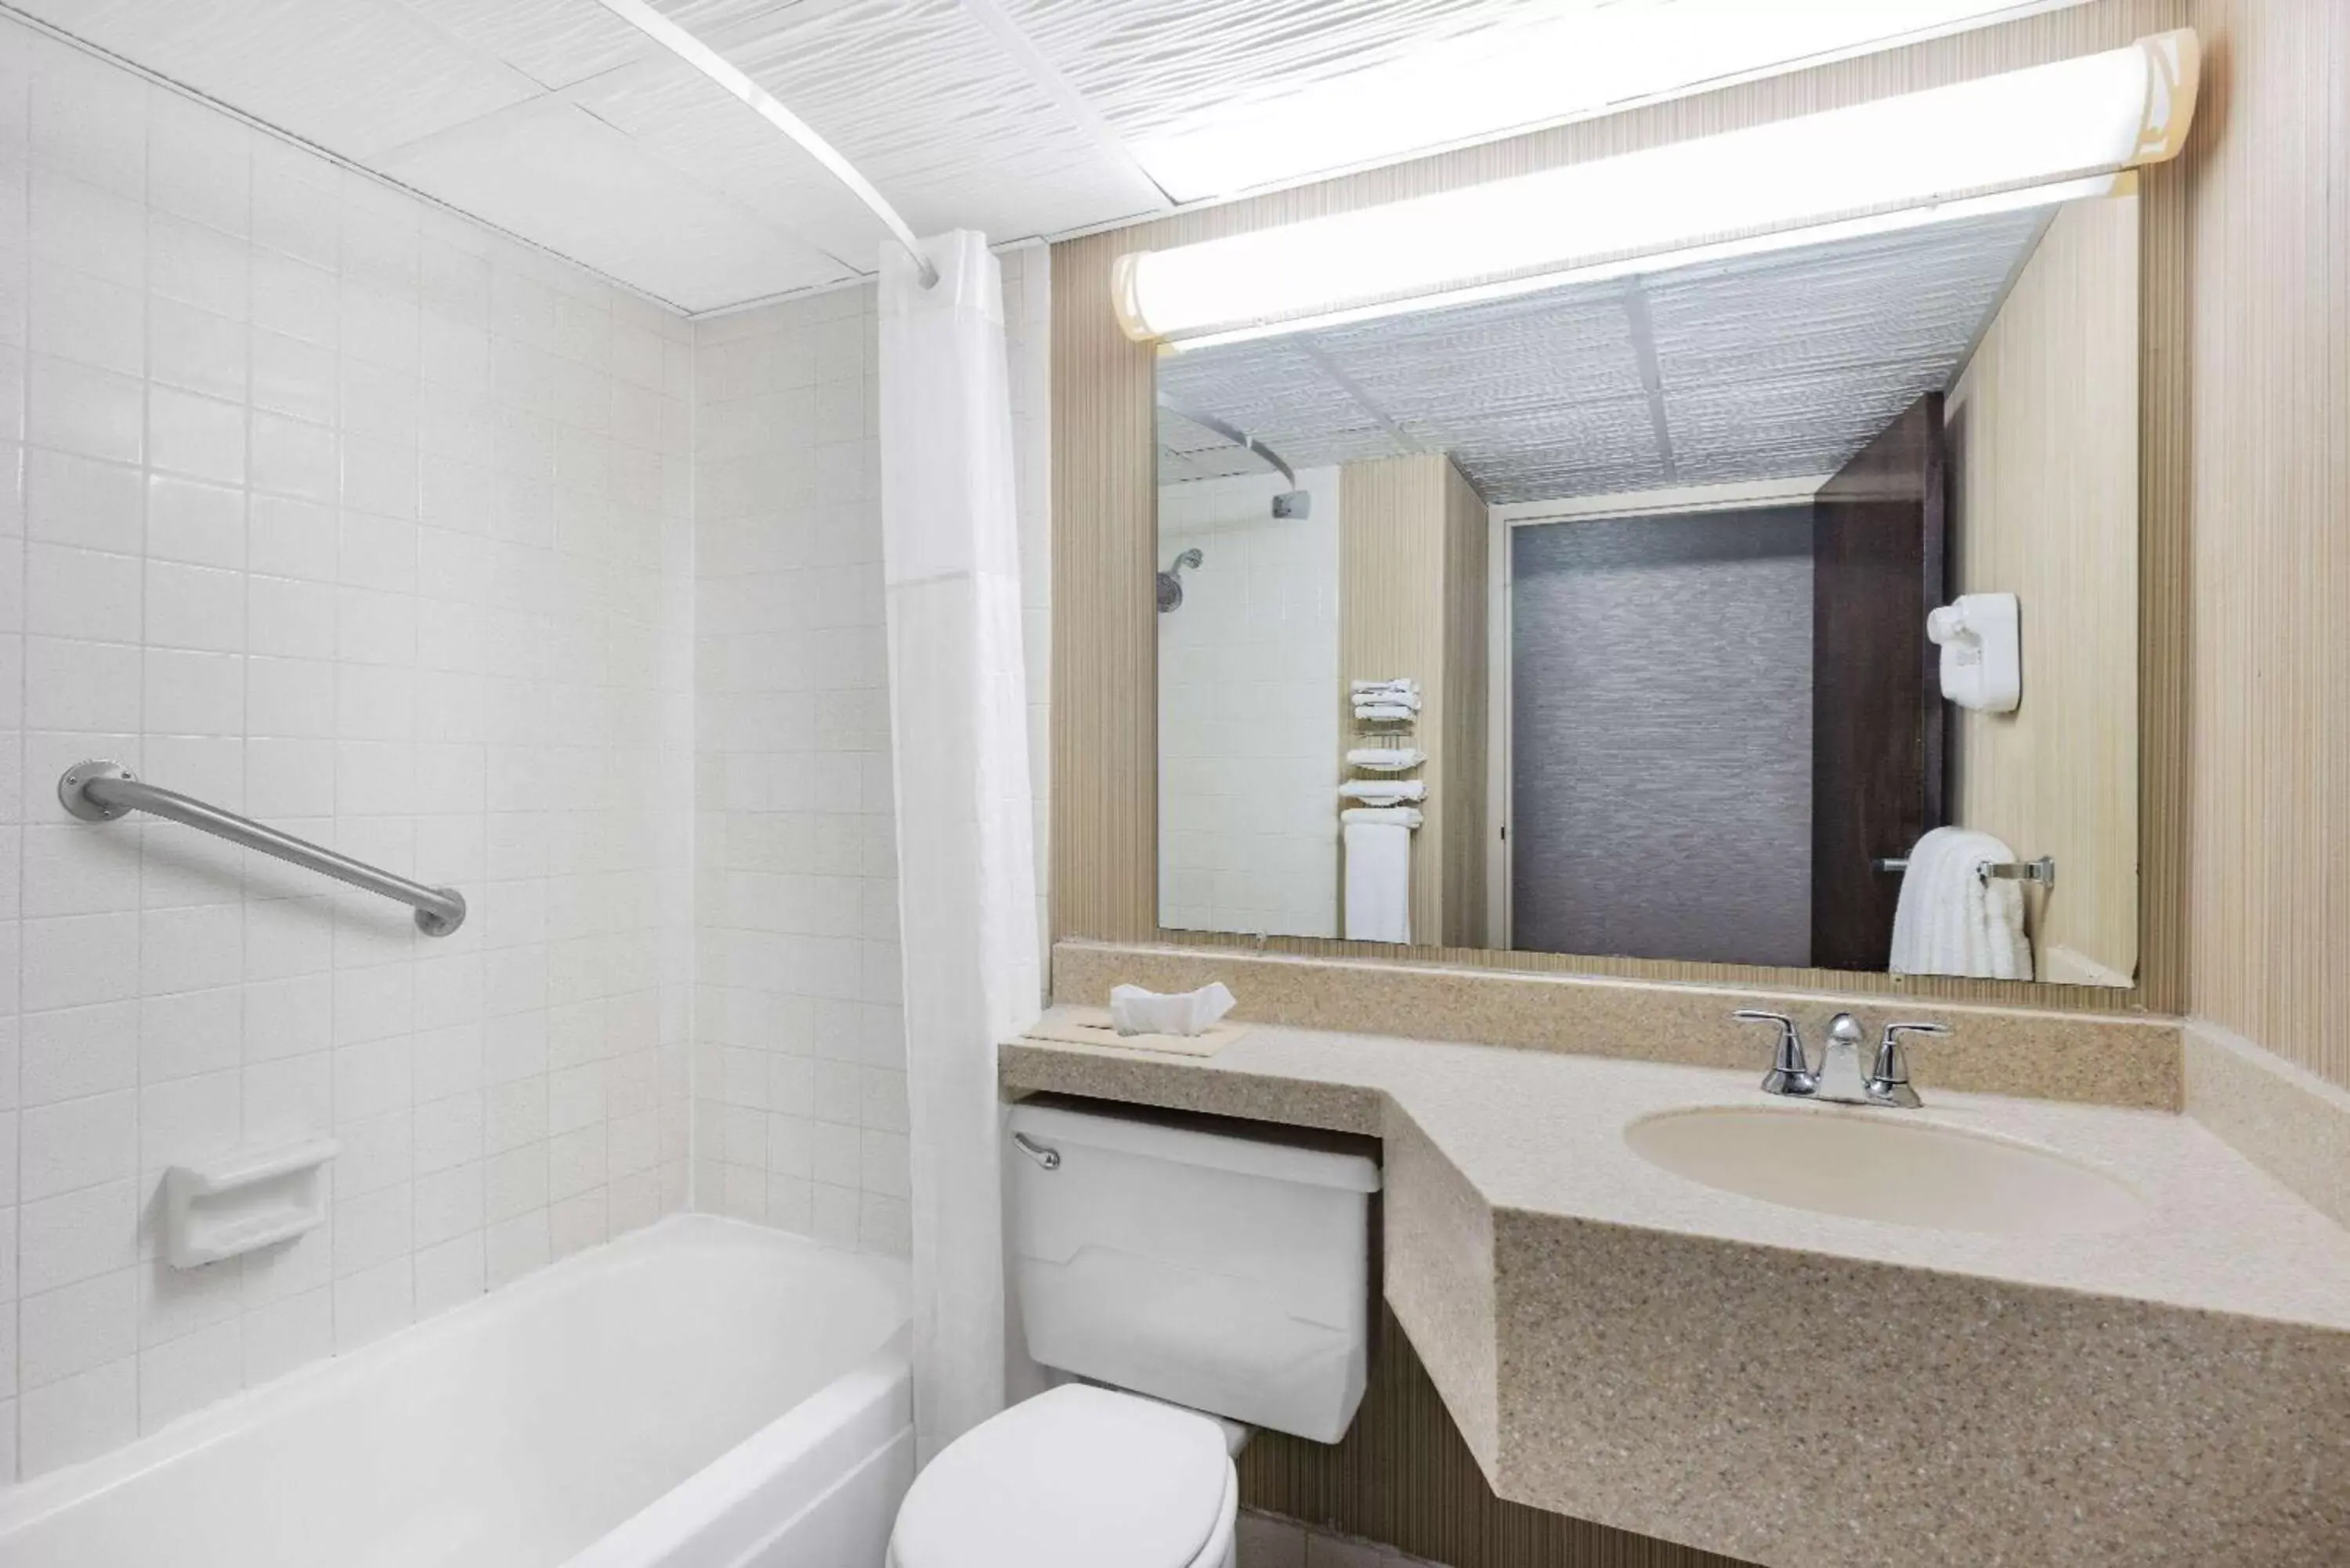 TV and multimedia, Bathroom in Ramada by Wyndham Grand Forks